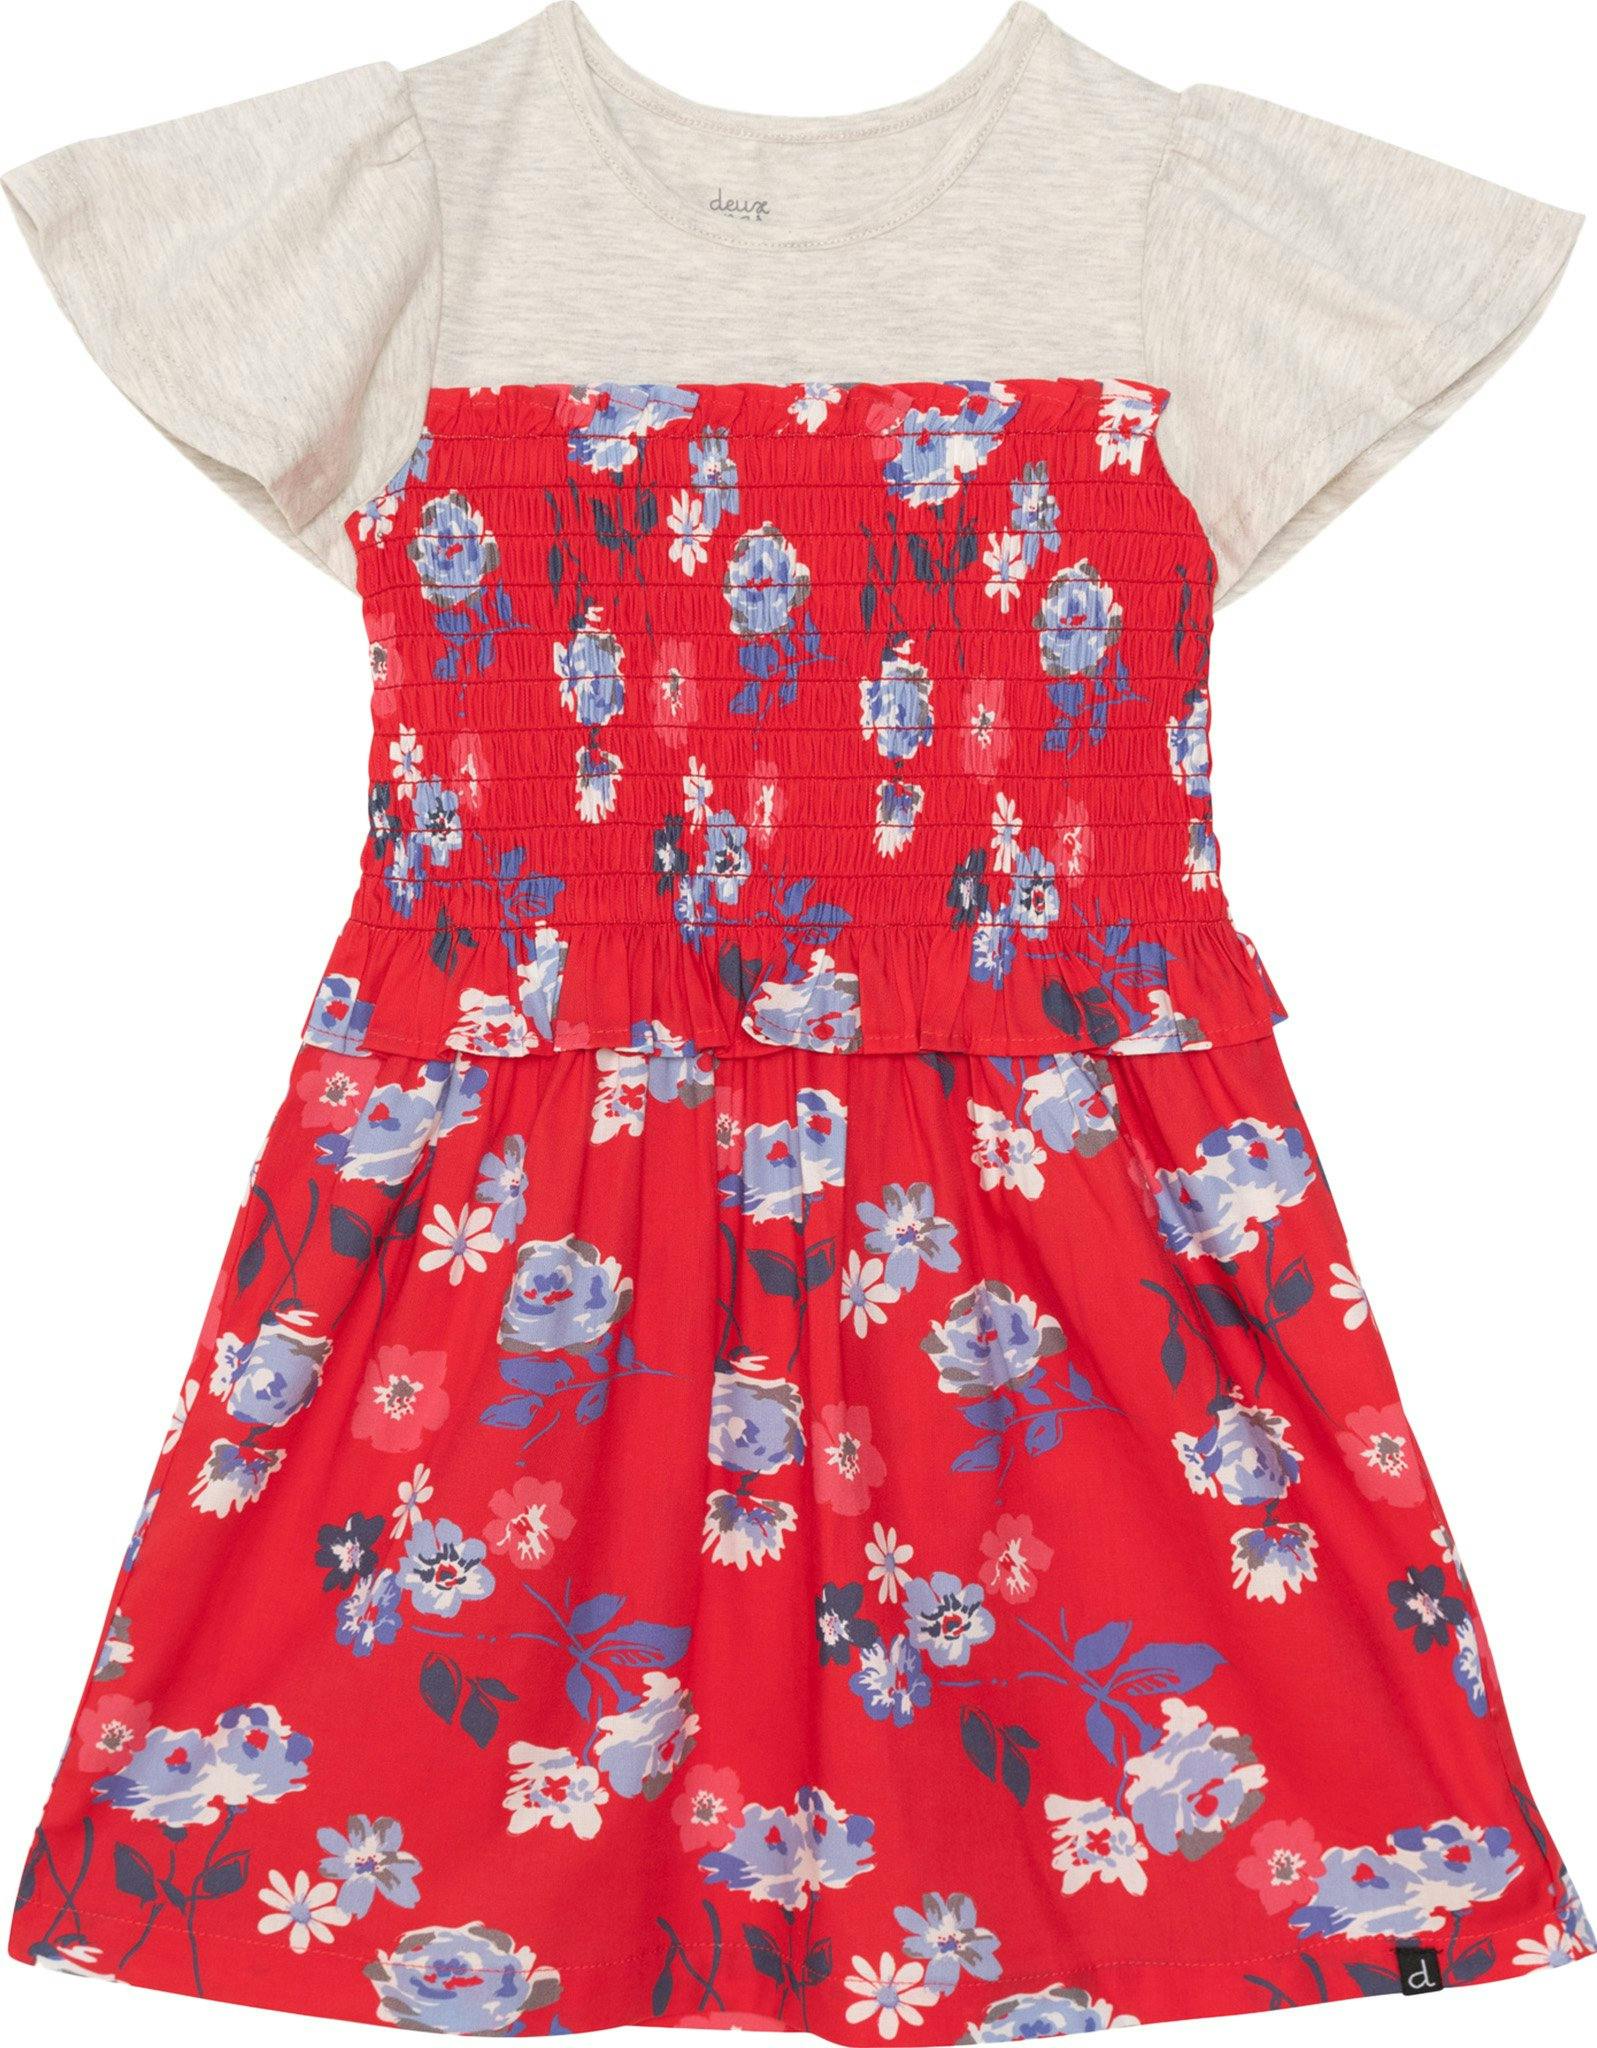 Image de produit pour Robe smockée à manches courtes bimatière avec imprimé de fleurs - Petite Fille